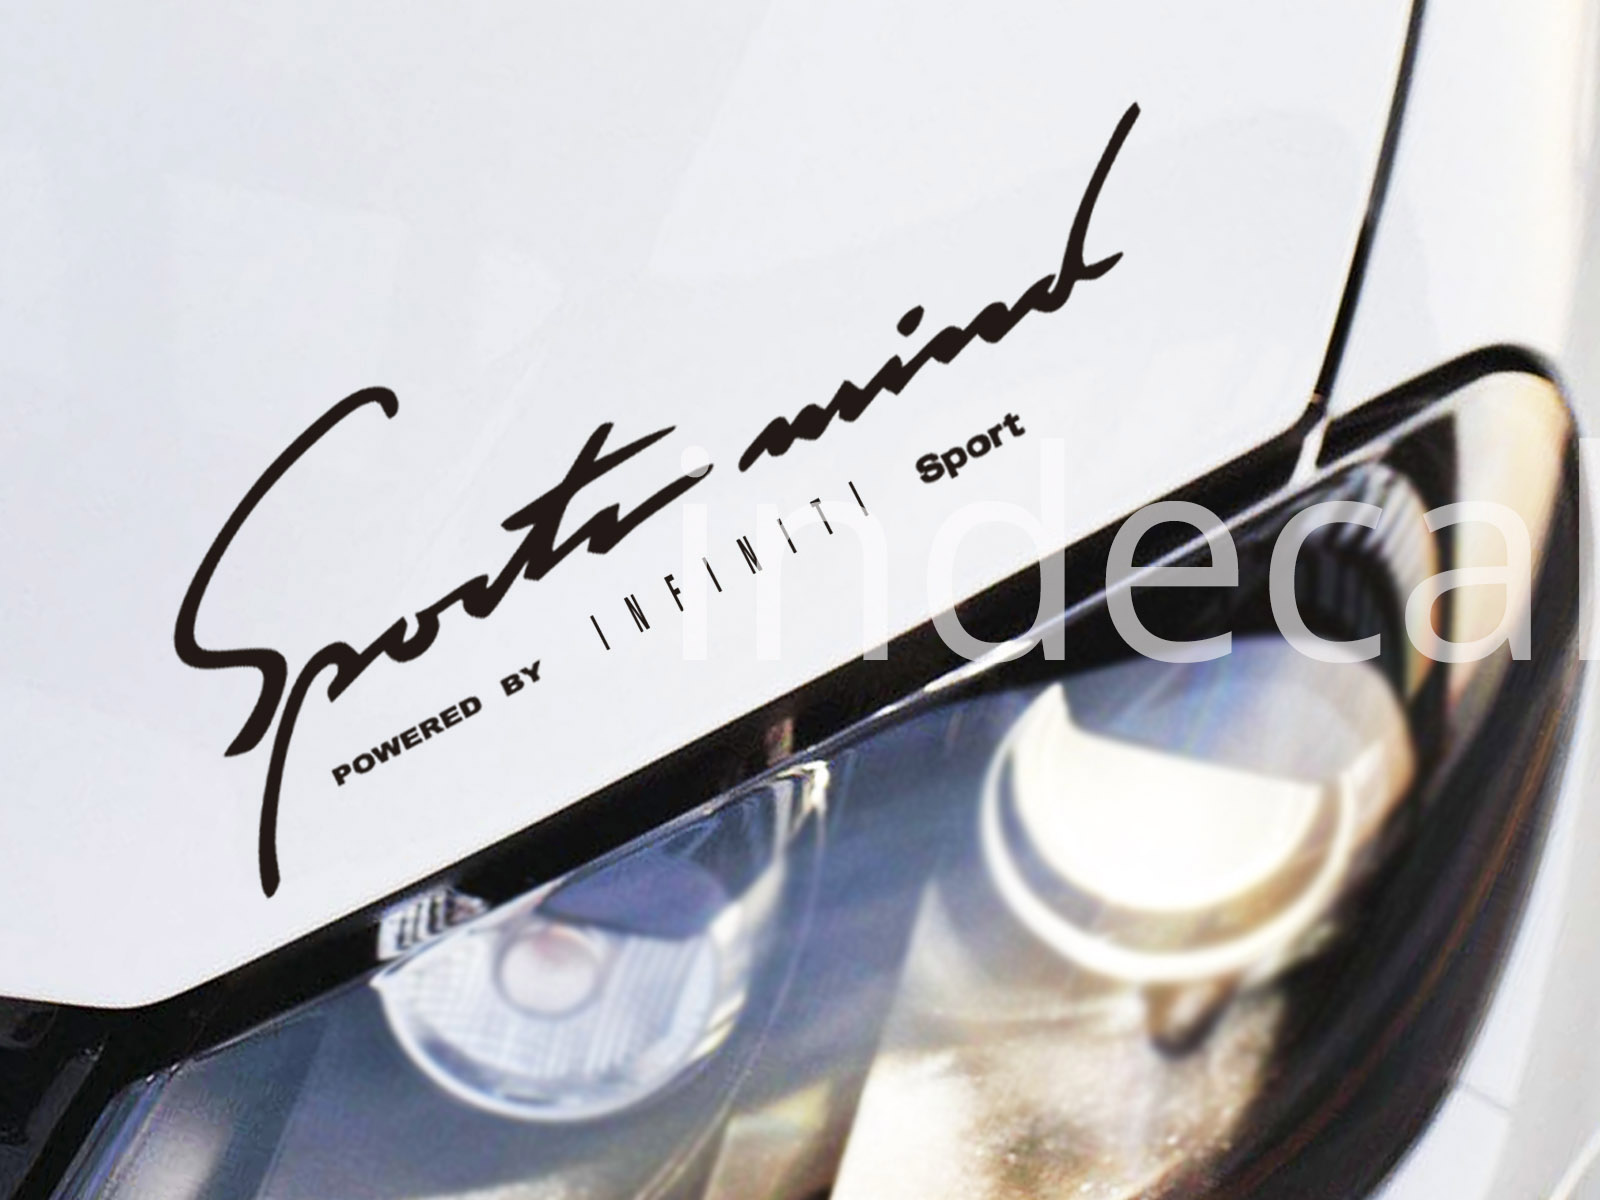 1 x Infiniti Sports Mind Sticker - Black